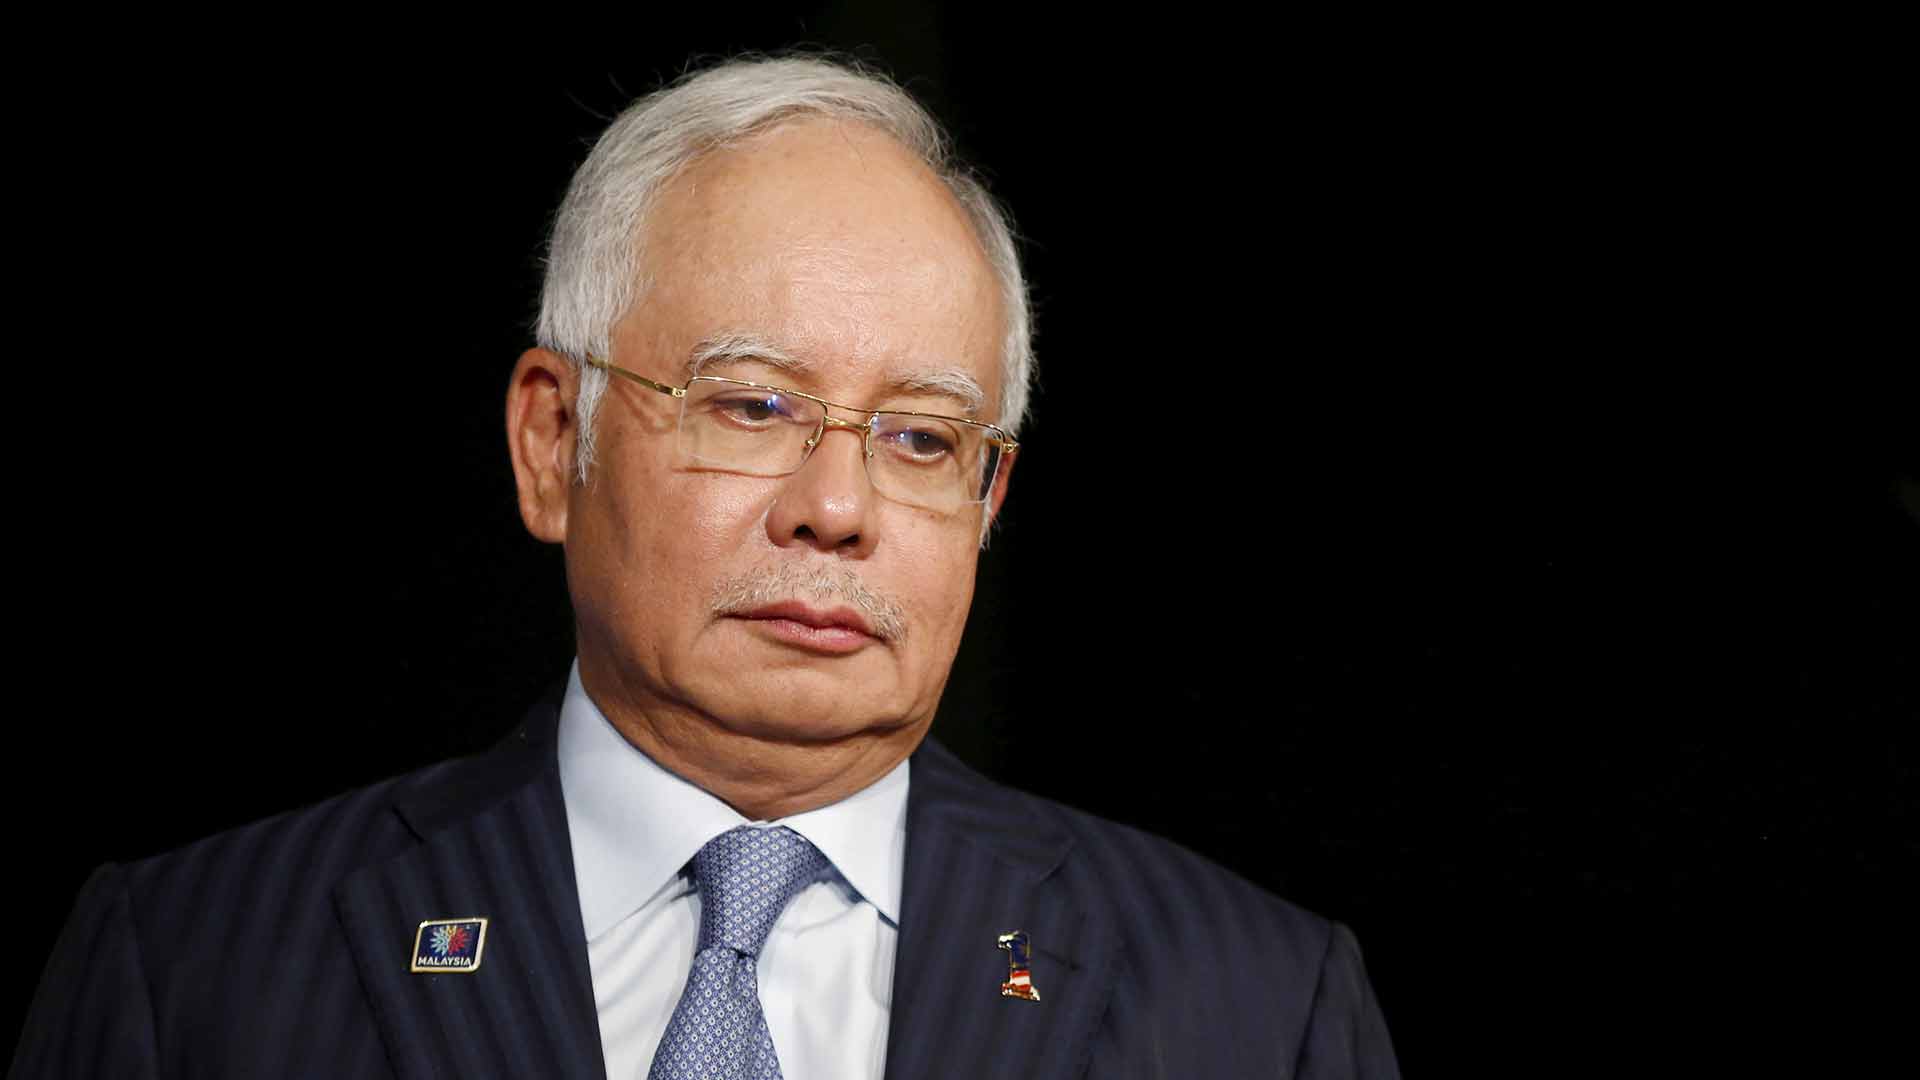 El ex primer ministro de Malasia Najib Razak, detenido por corrupción